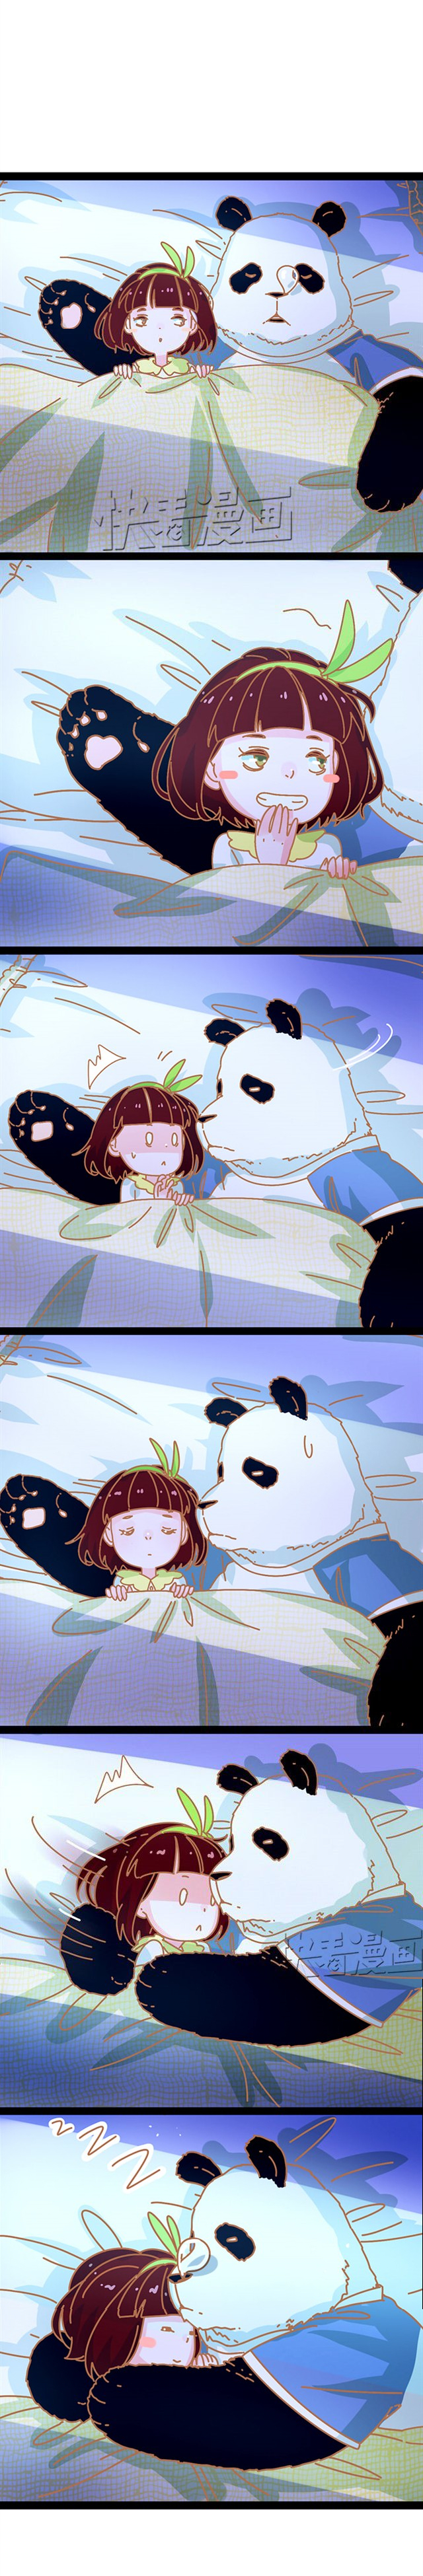 My Panda Boyfriend Ch. 7 Can’t fall asleep Part 2